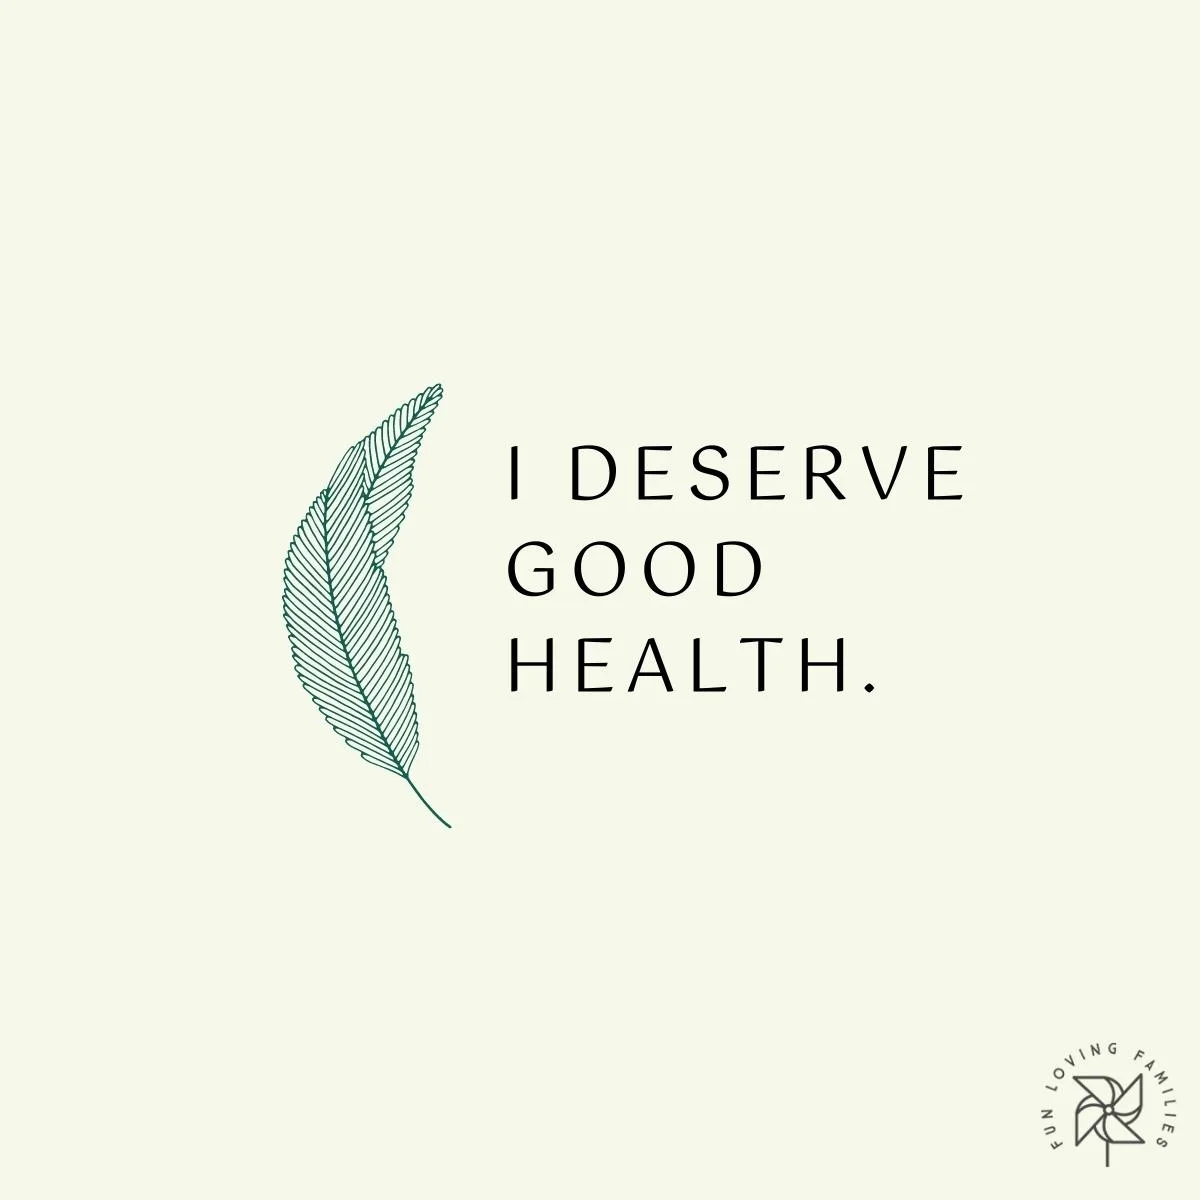 I deserve good health affirmation